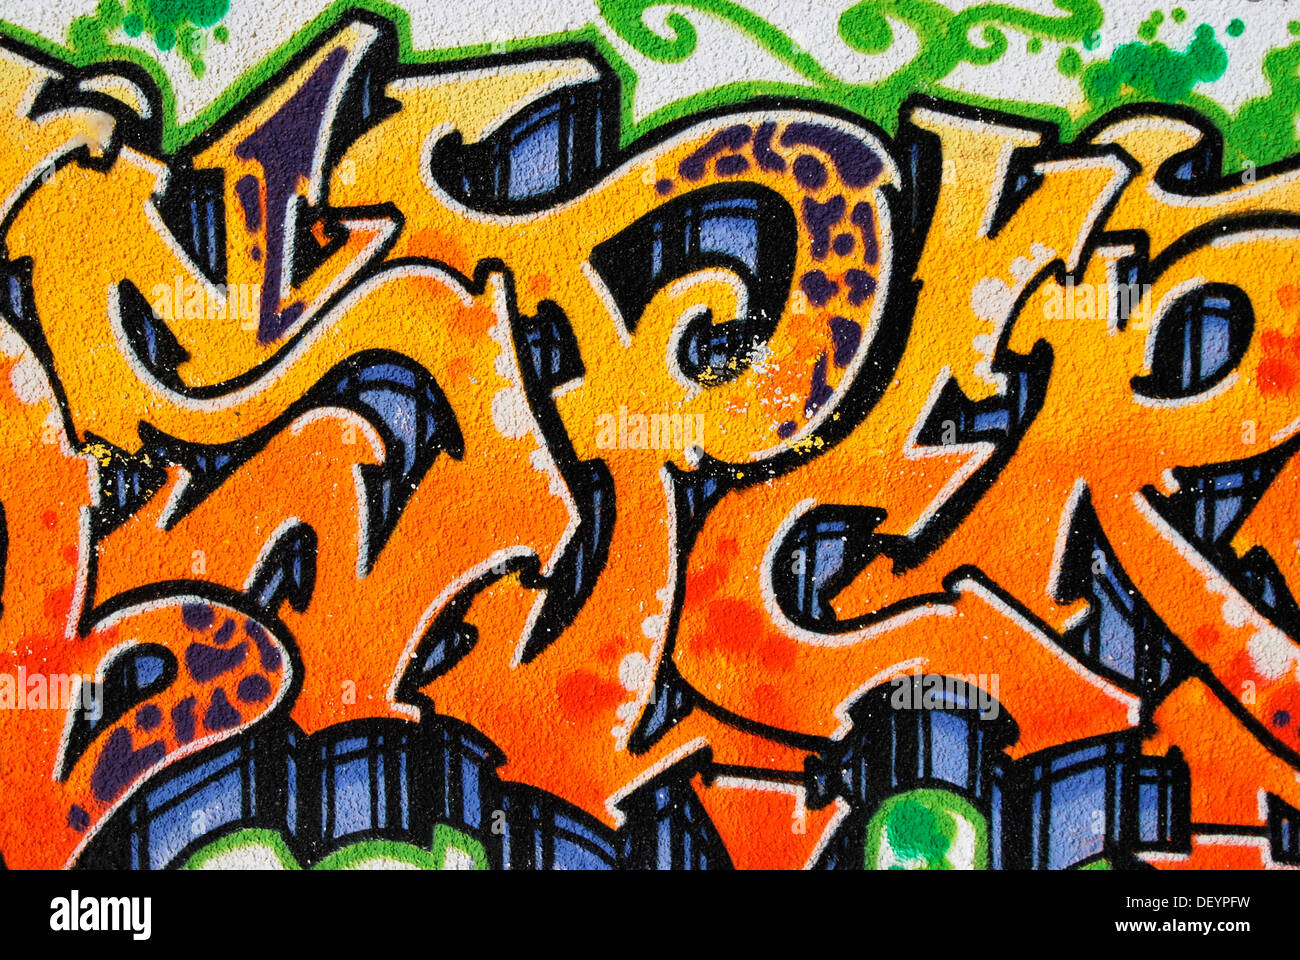 Graffiti sur un mur Banque D'Images